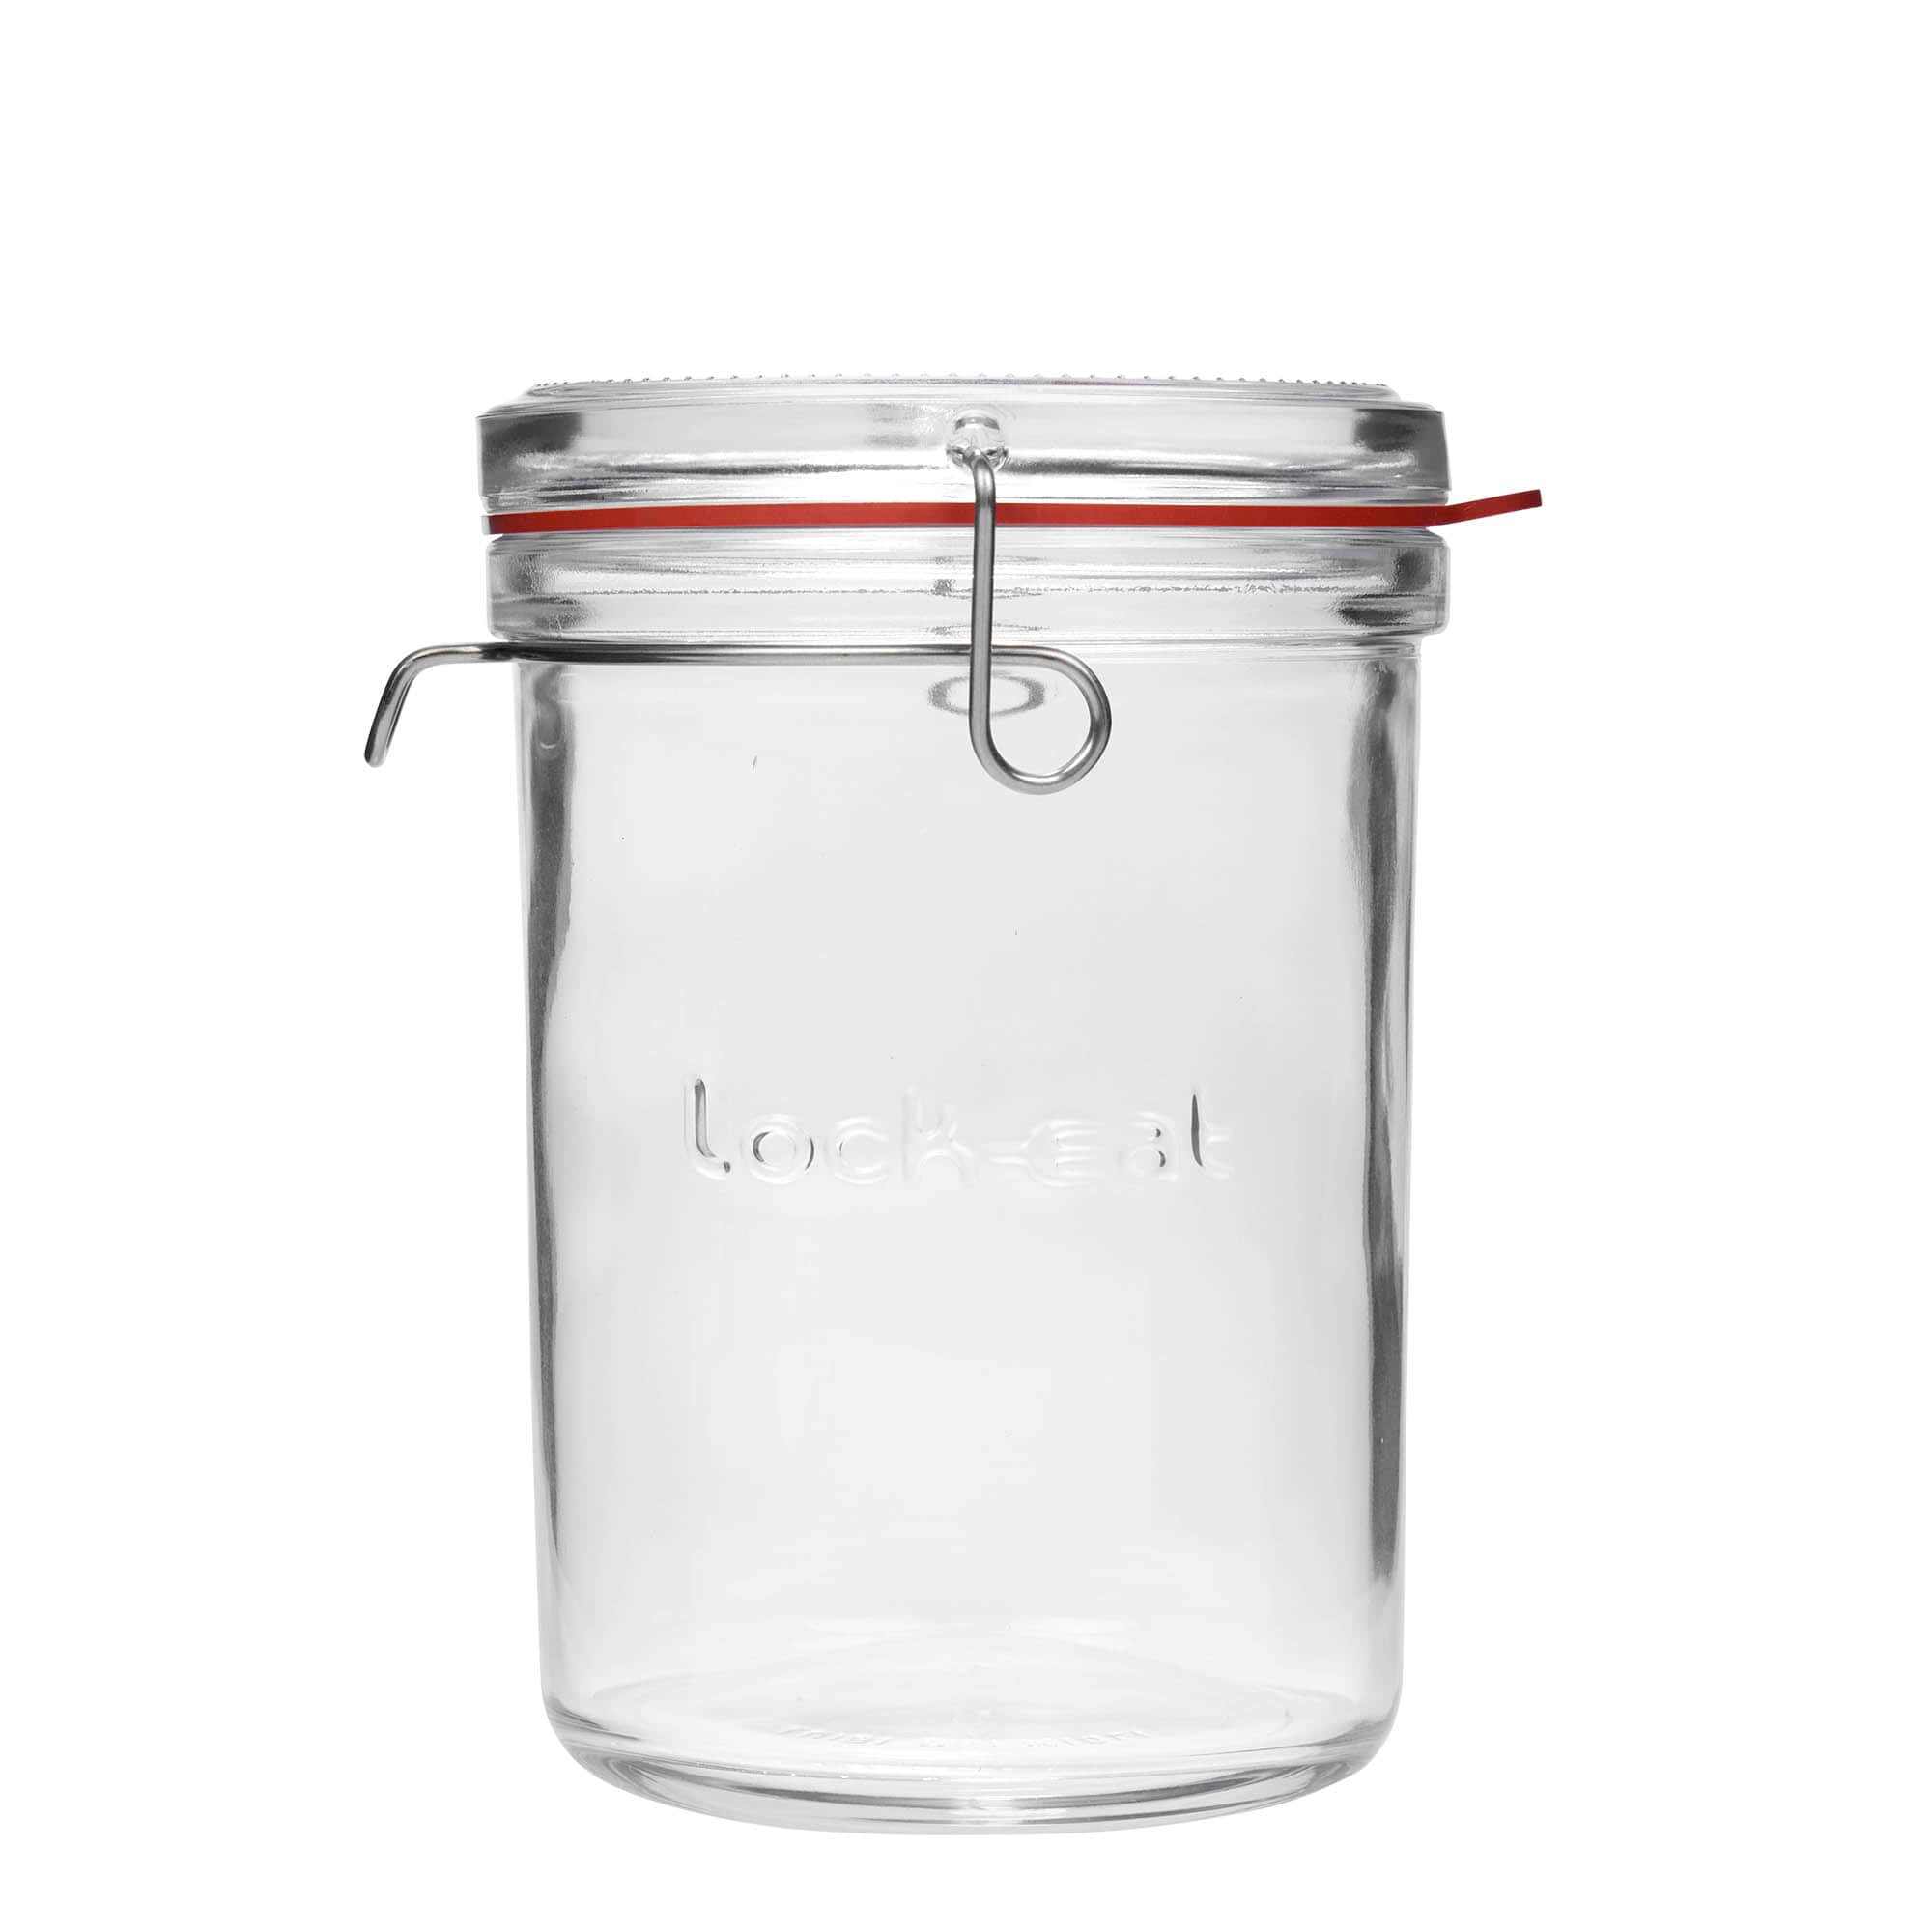 1,000 ml clip top jar 'Lock-Eat', closure: clip top